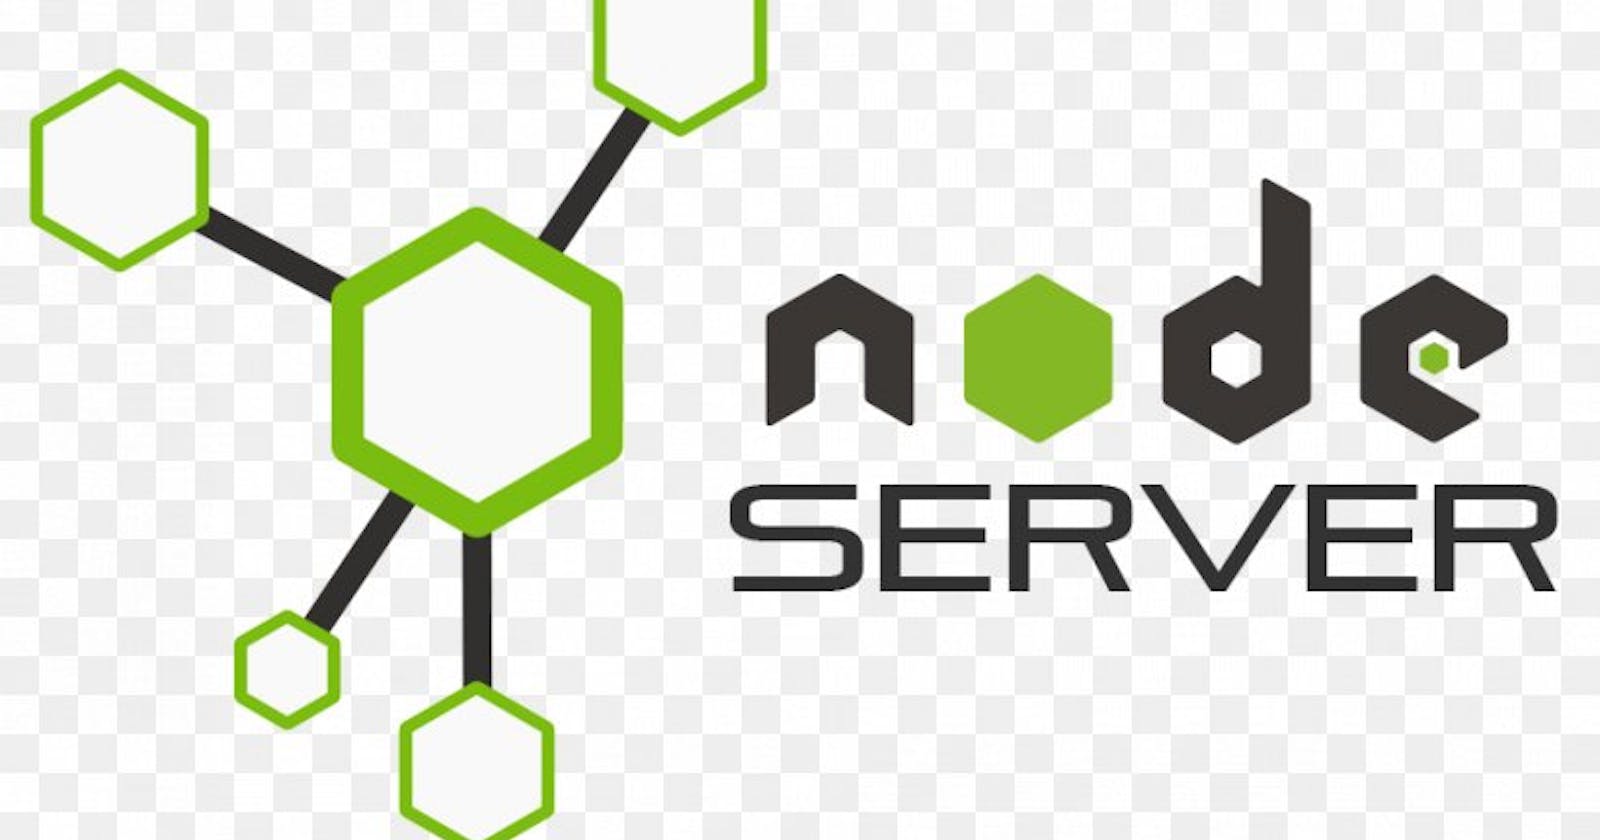 creating a node.js server